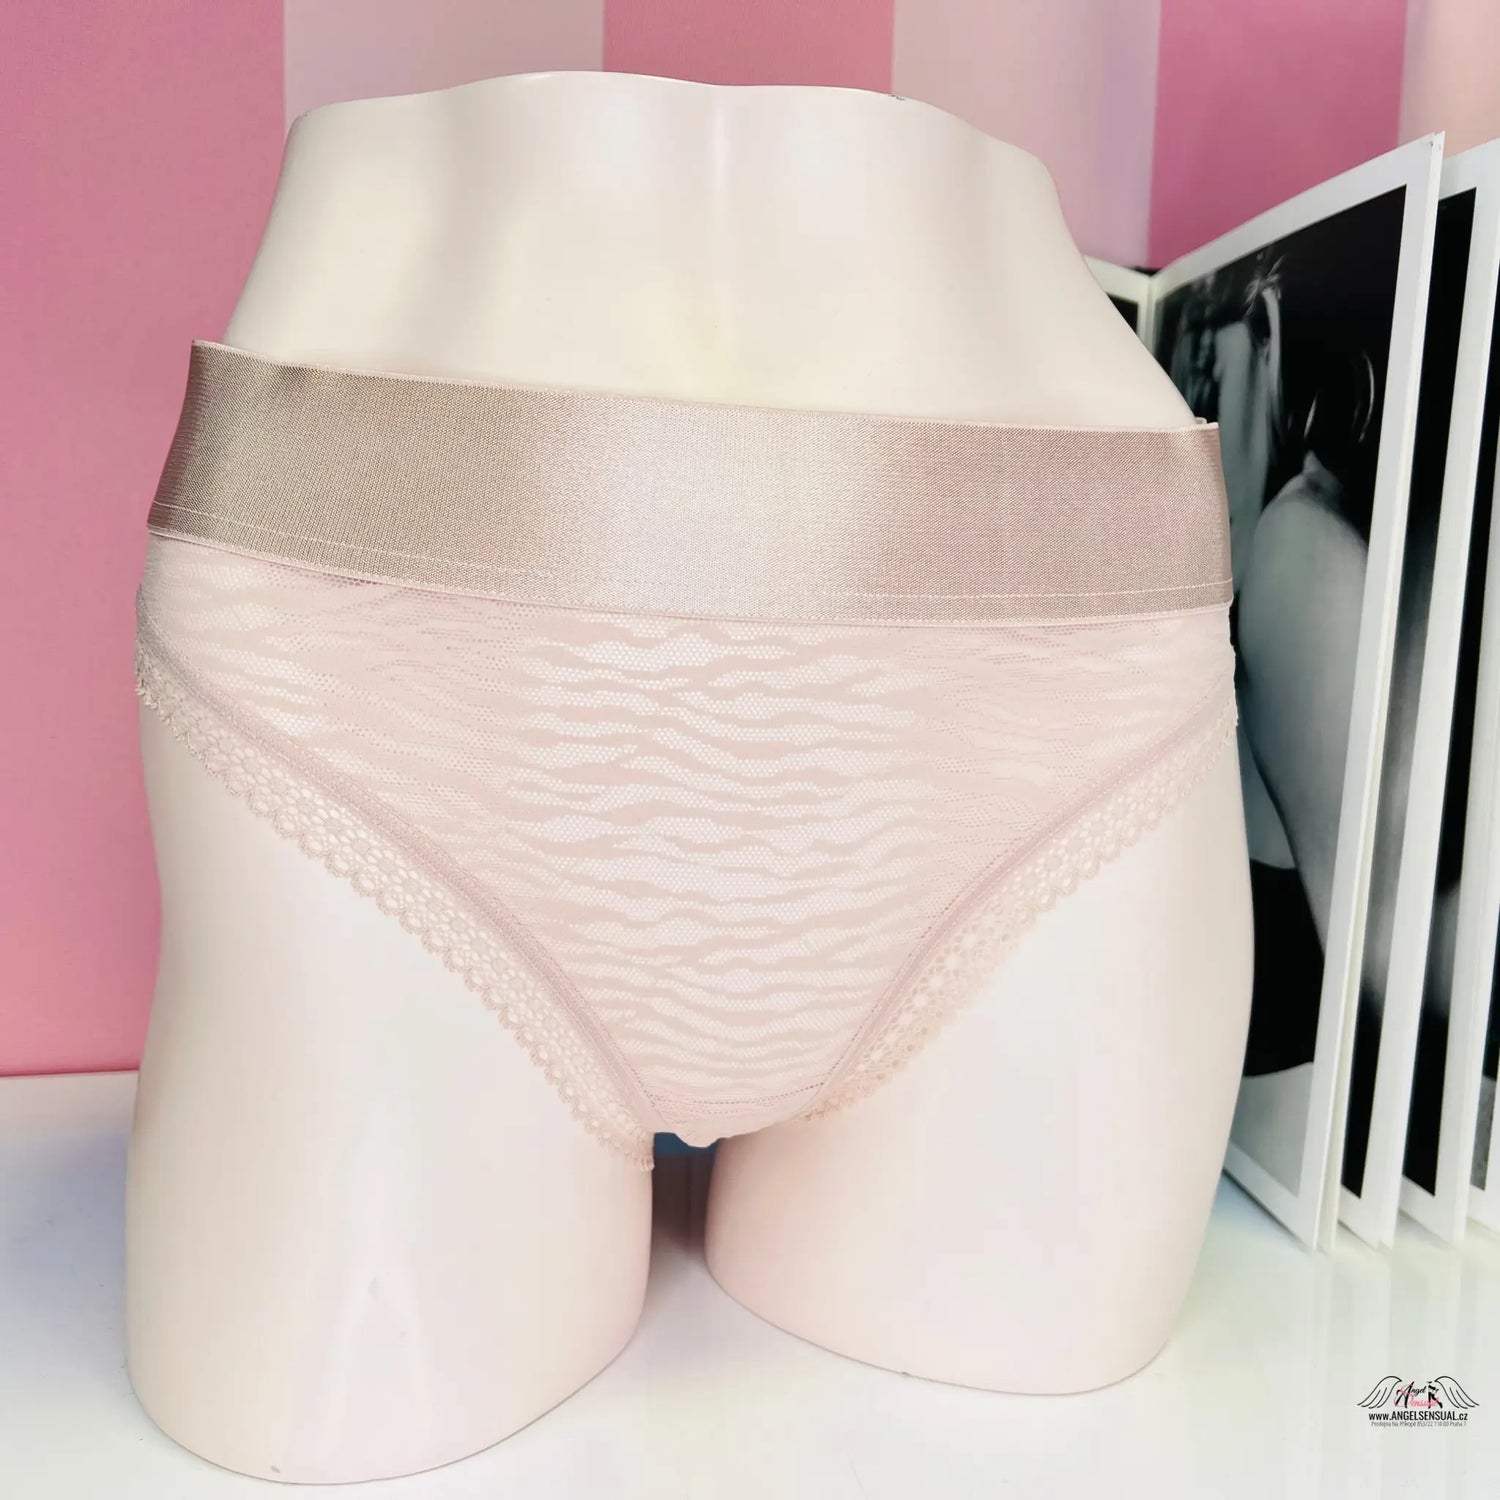 Síťované kalhotky - Růžová / M / Nové se štítky - Kalhotky Victoria’s Secret